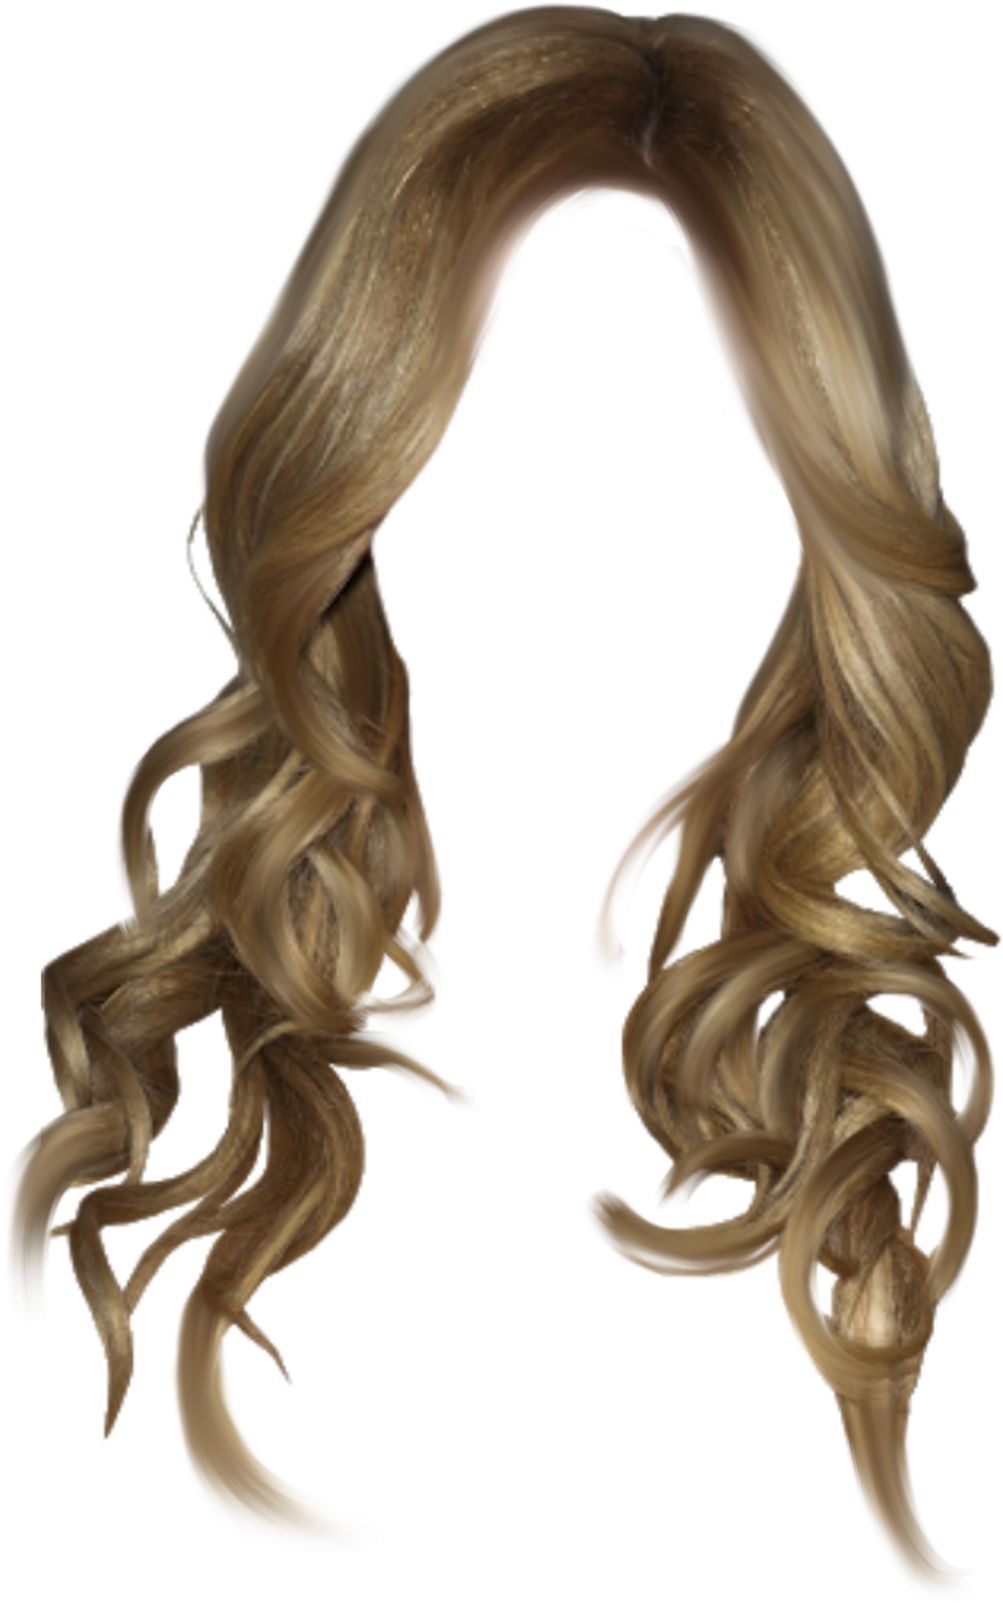 #wig #blonde #blondewig #curly #wavyhair #longhair Clipart (1024x1820), Png Download